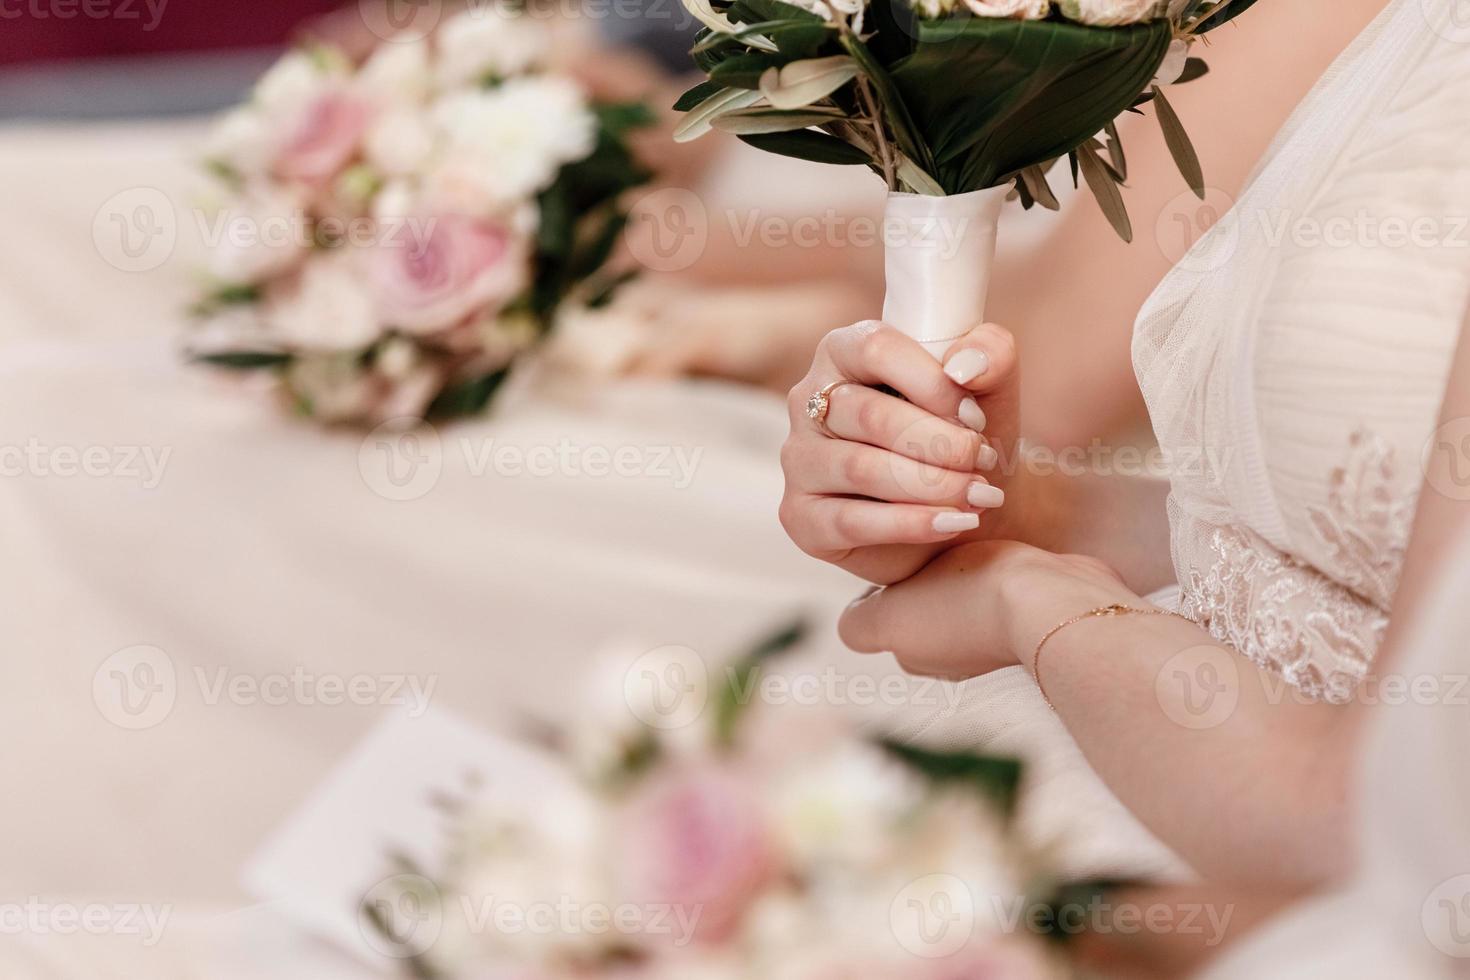 gros plan de robes de demoiselles d'honneur nues, de bouquets de fleurs, de robes modernes et à la mode assises lors d'une cérémonie de mariage. Jour de mariage. photo de haute qualité